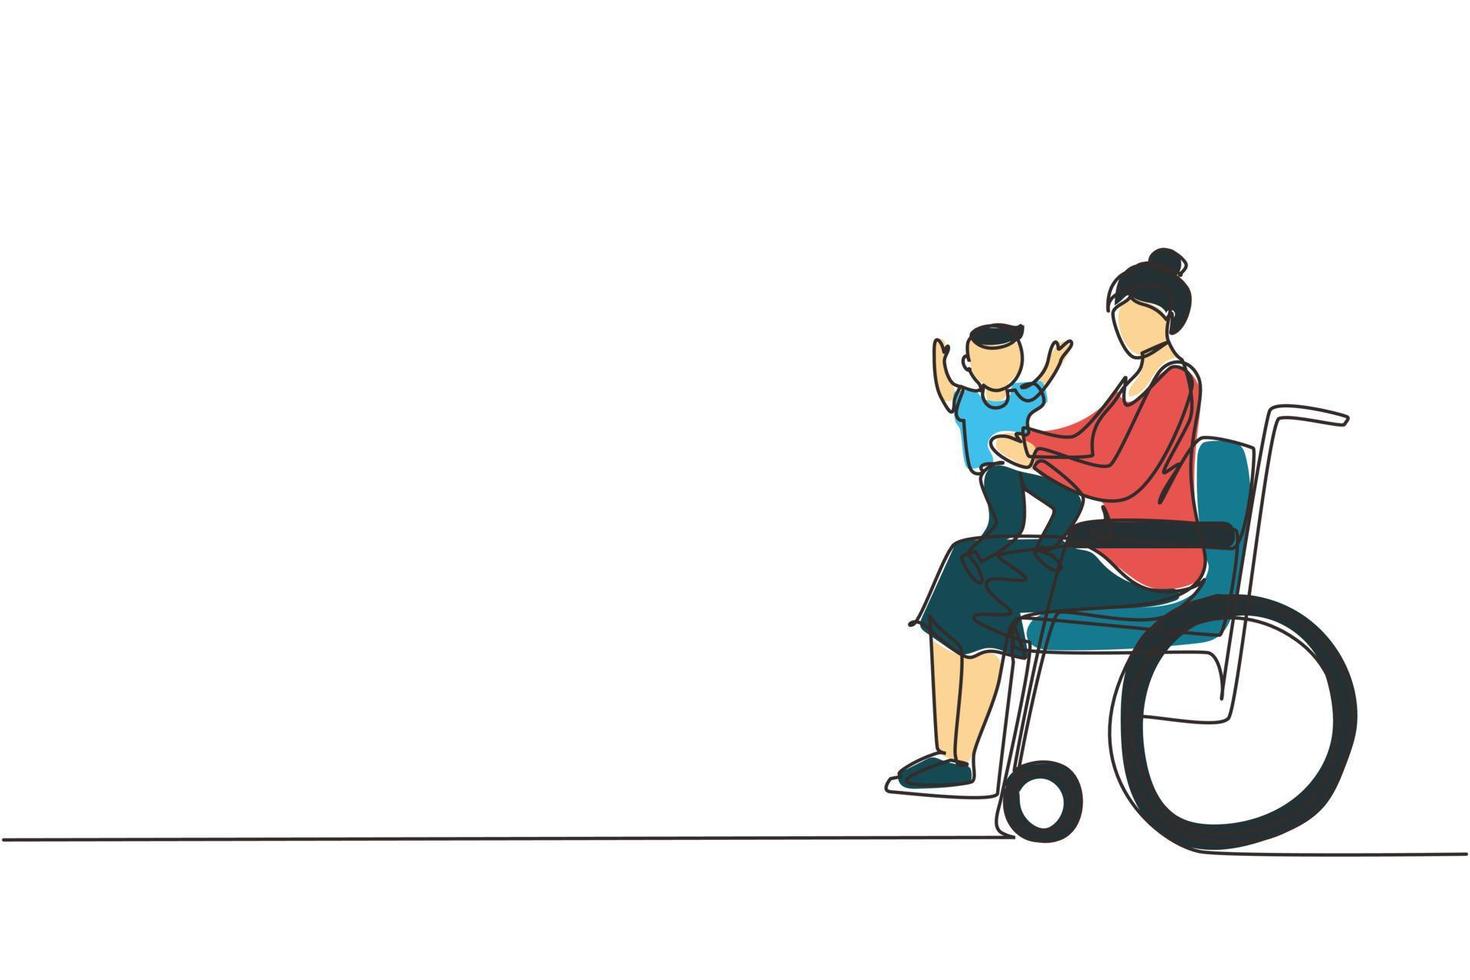 enda en rad ritning glad handikappad mamma med sitt barn. funktionshinder kvinna som håller barnet i famnen. familj kärlek koncept. fysisk funktionsnedsättning och samhälle. kontinuerlig linje rita design illustration vektor